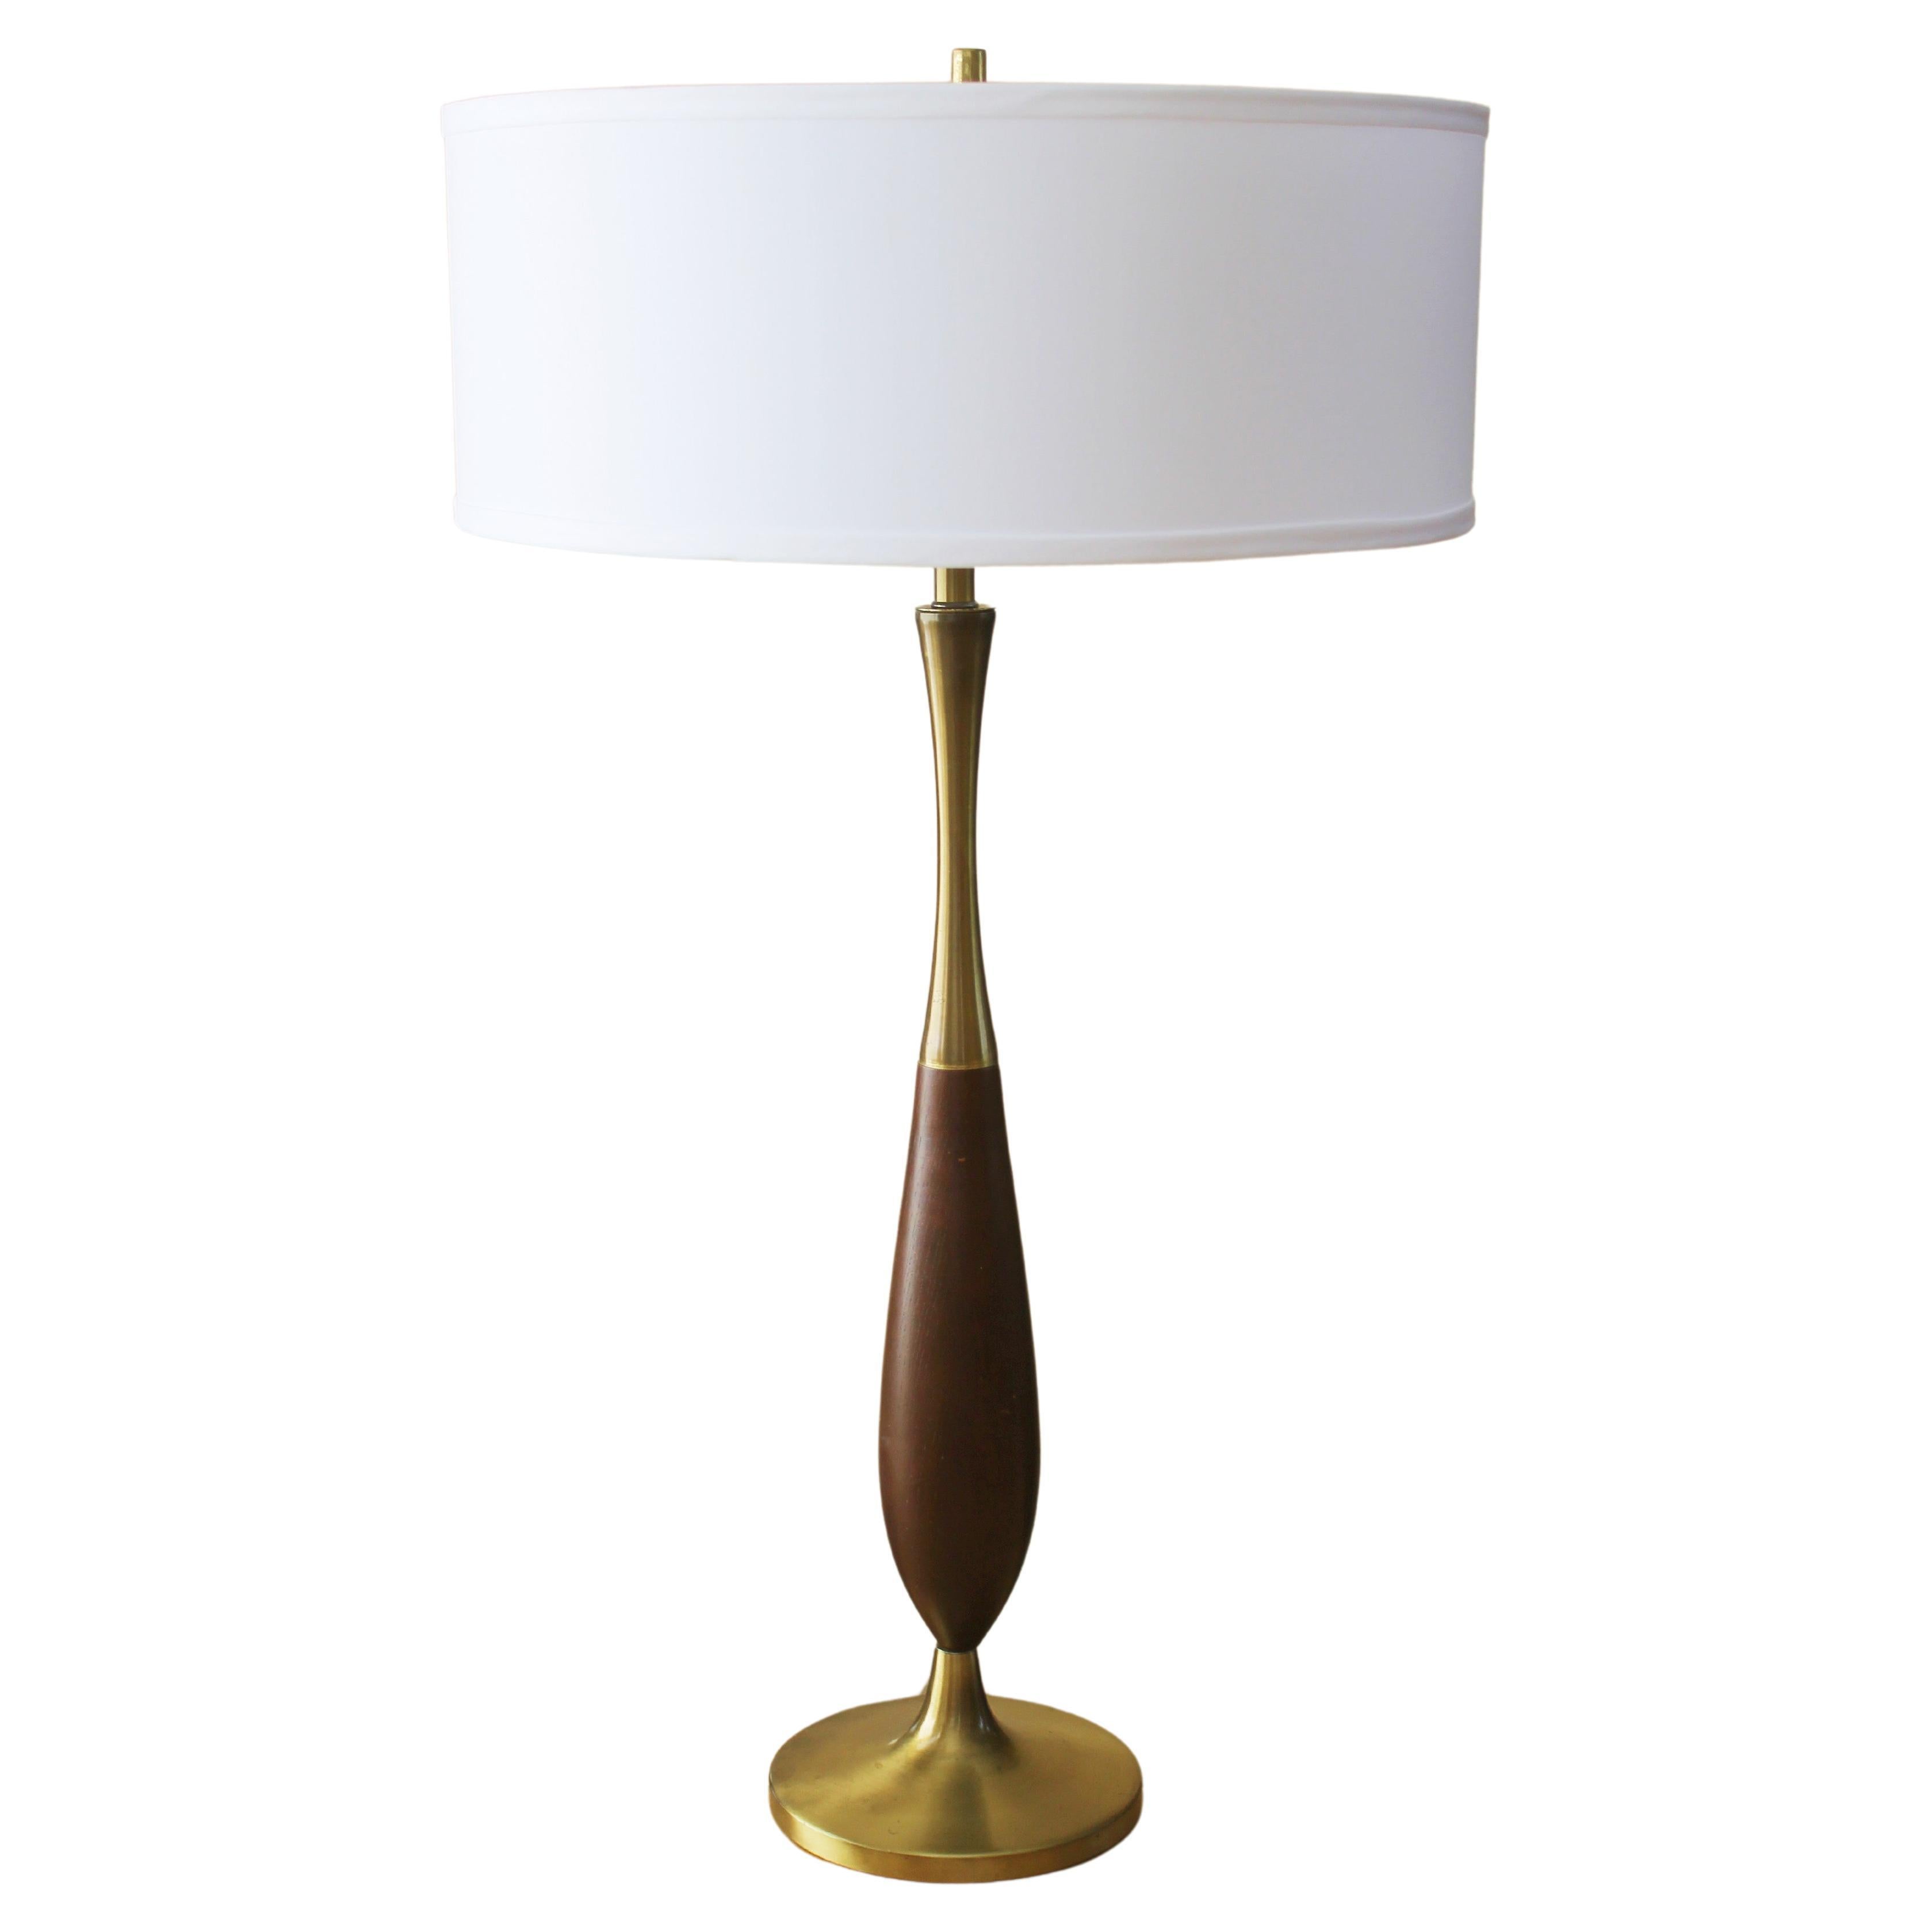 Mid Century Danish Modern Table Lamp! Gerald Thurston Era 1950s Brass & Wood